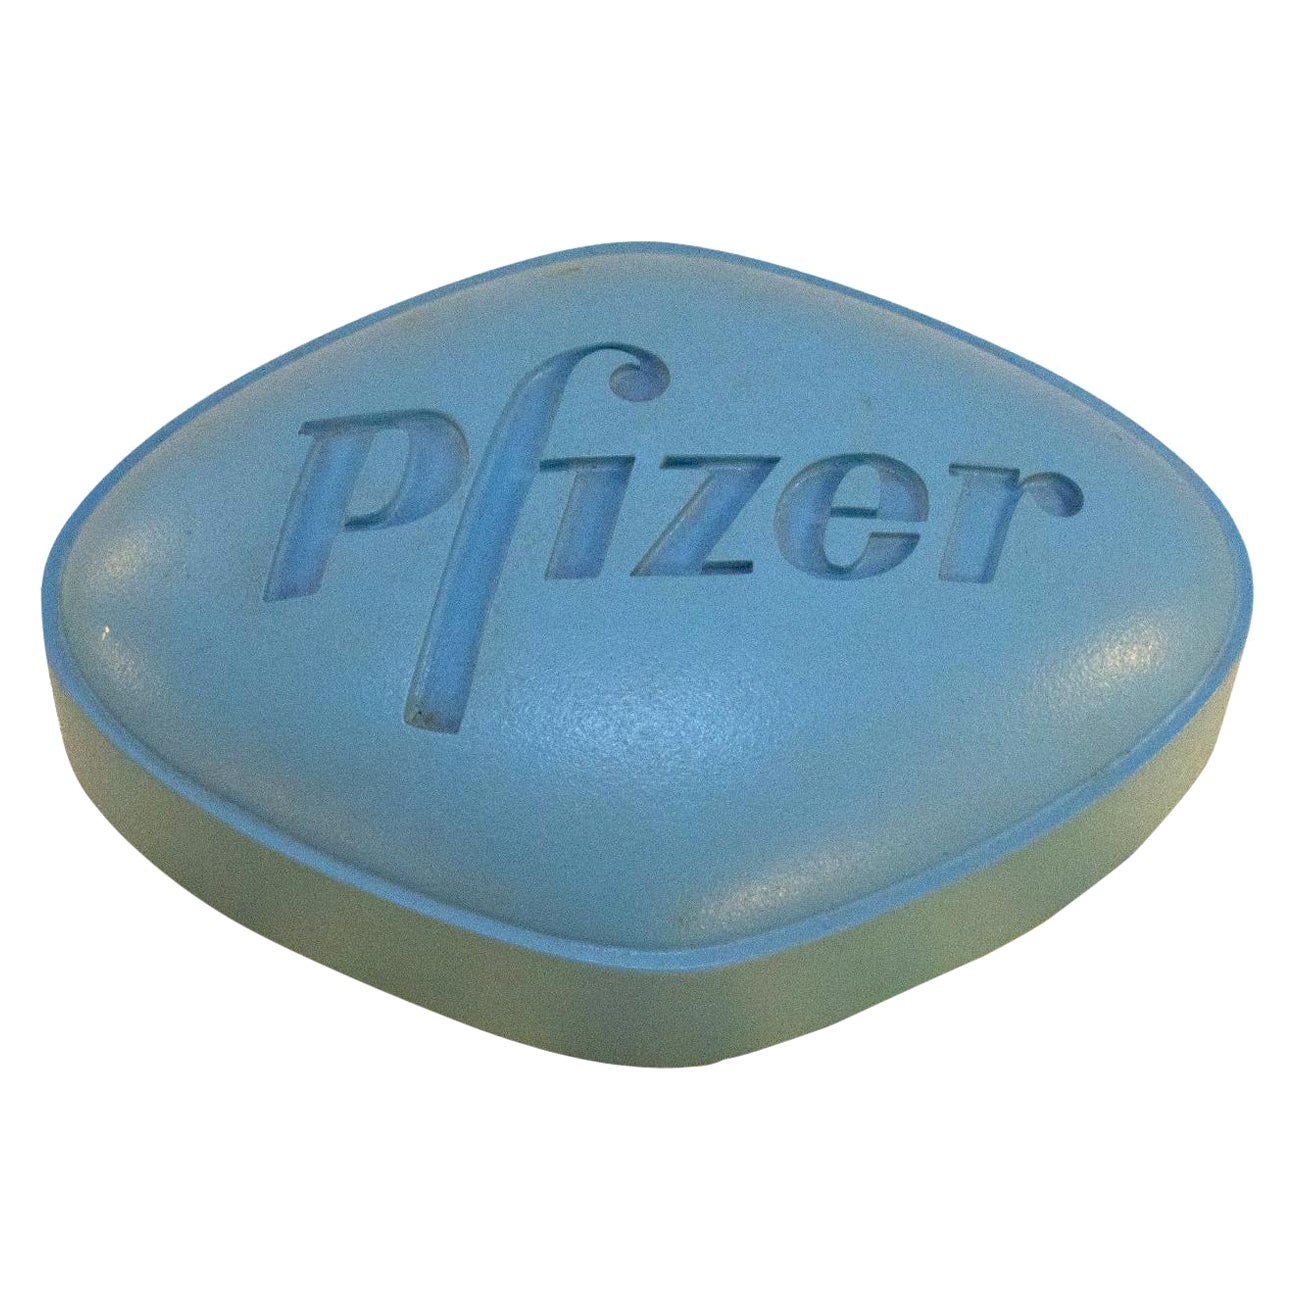 Sculpture of a Blue Viagra Pill by Mark Yurkiw